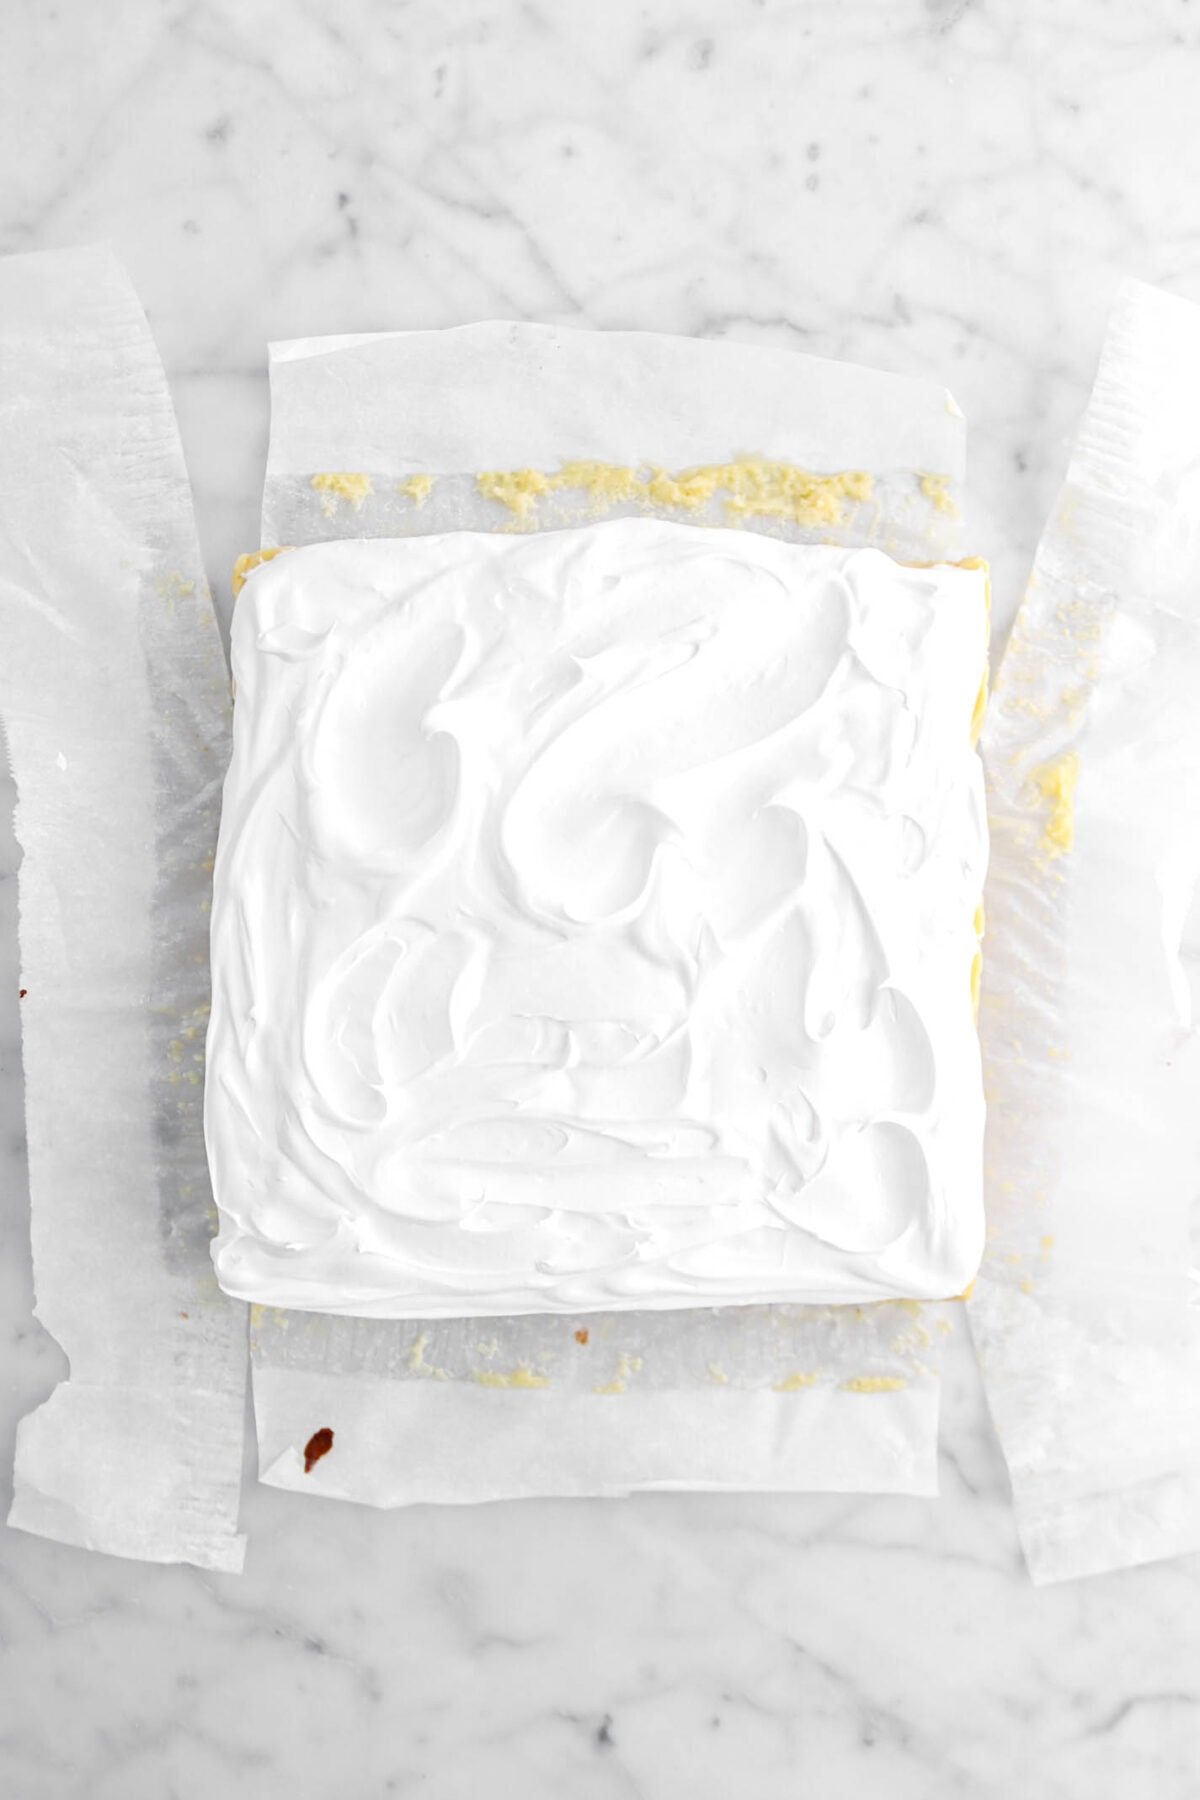 meringue spread across key lime pie on parchment paper